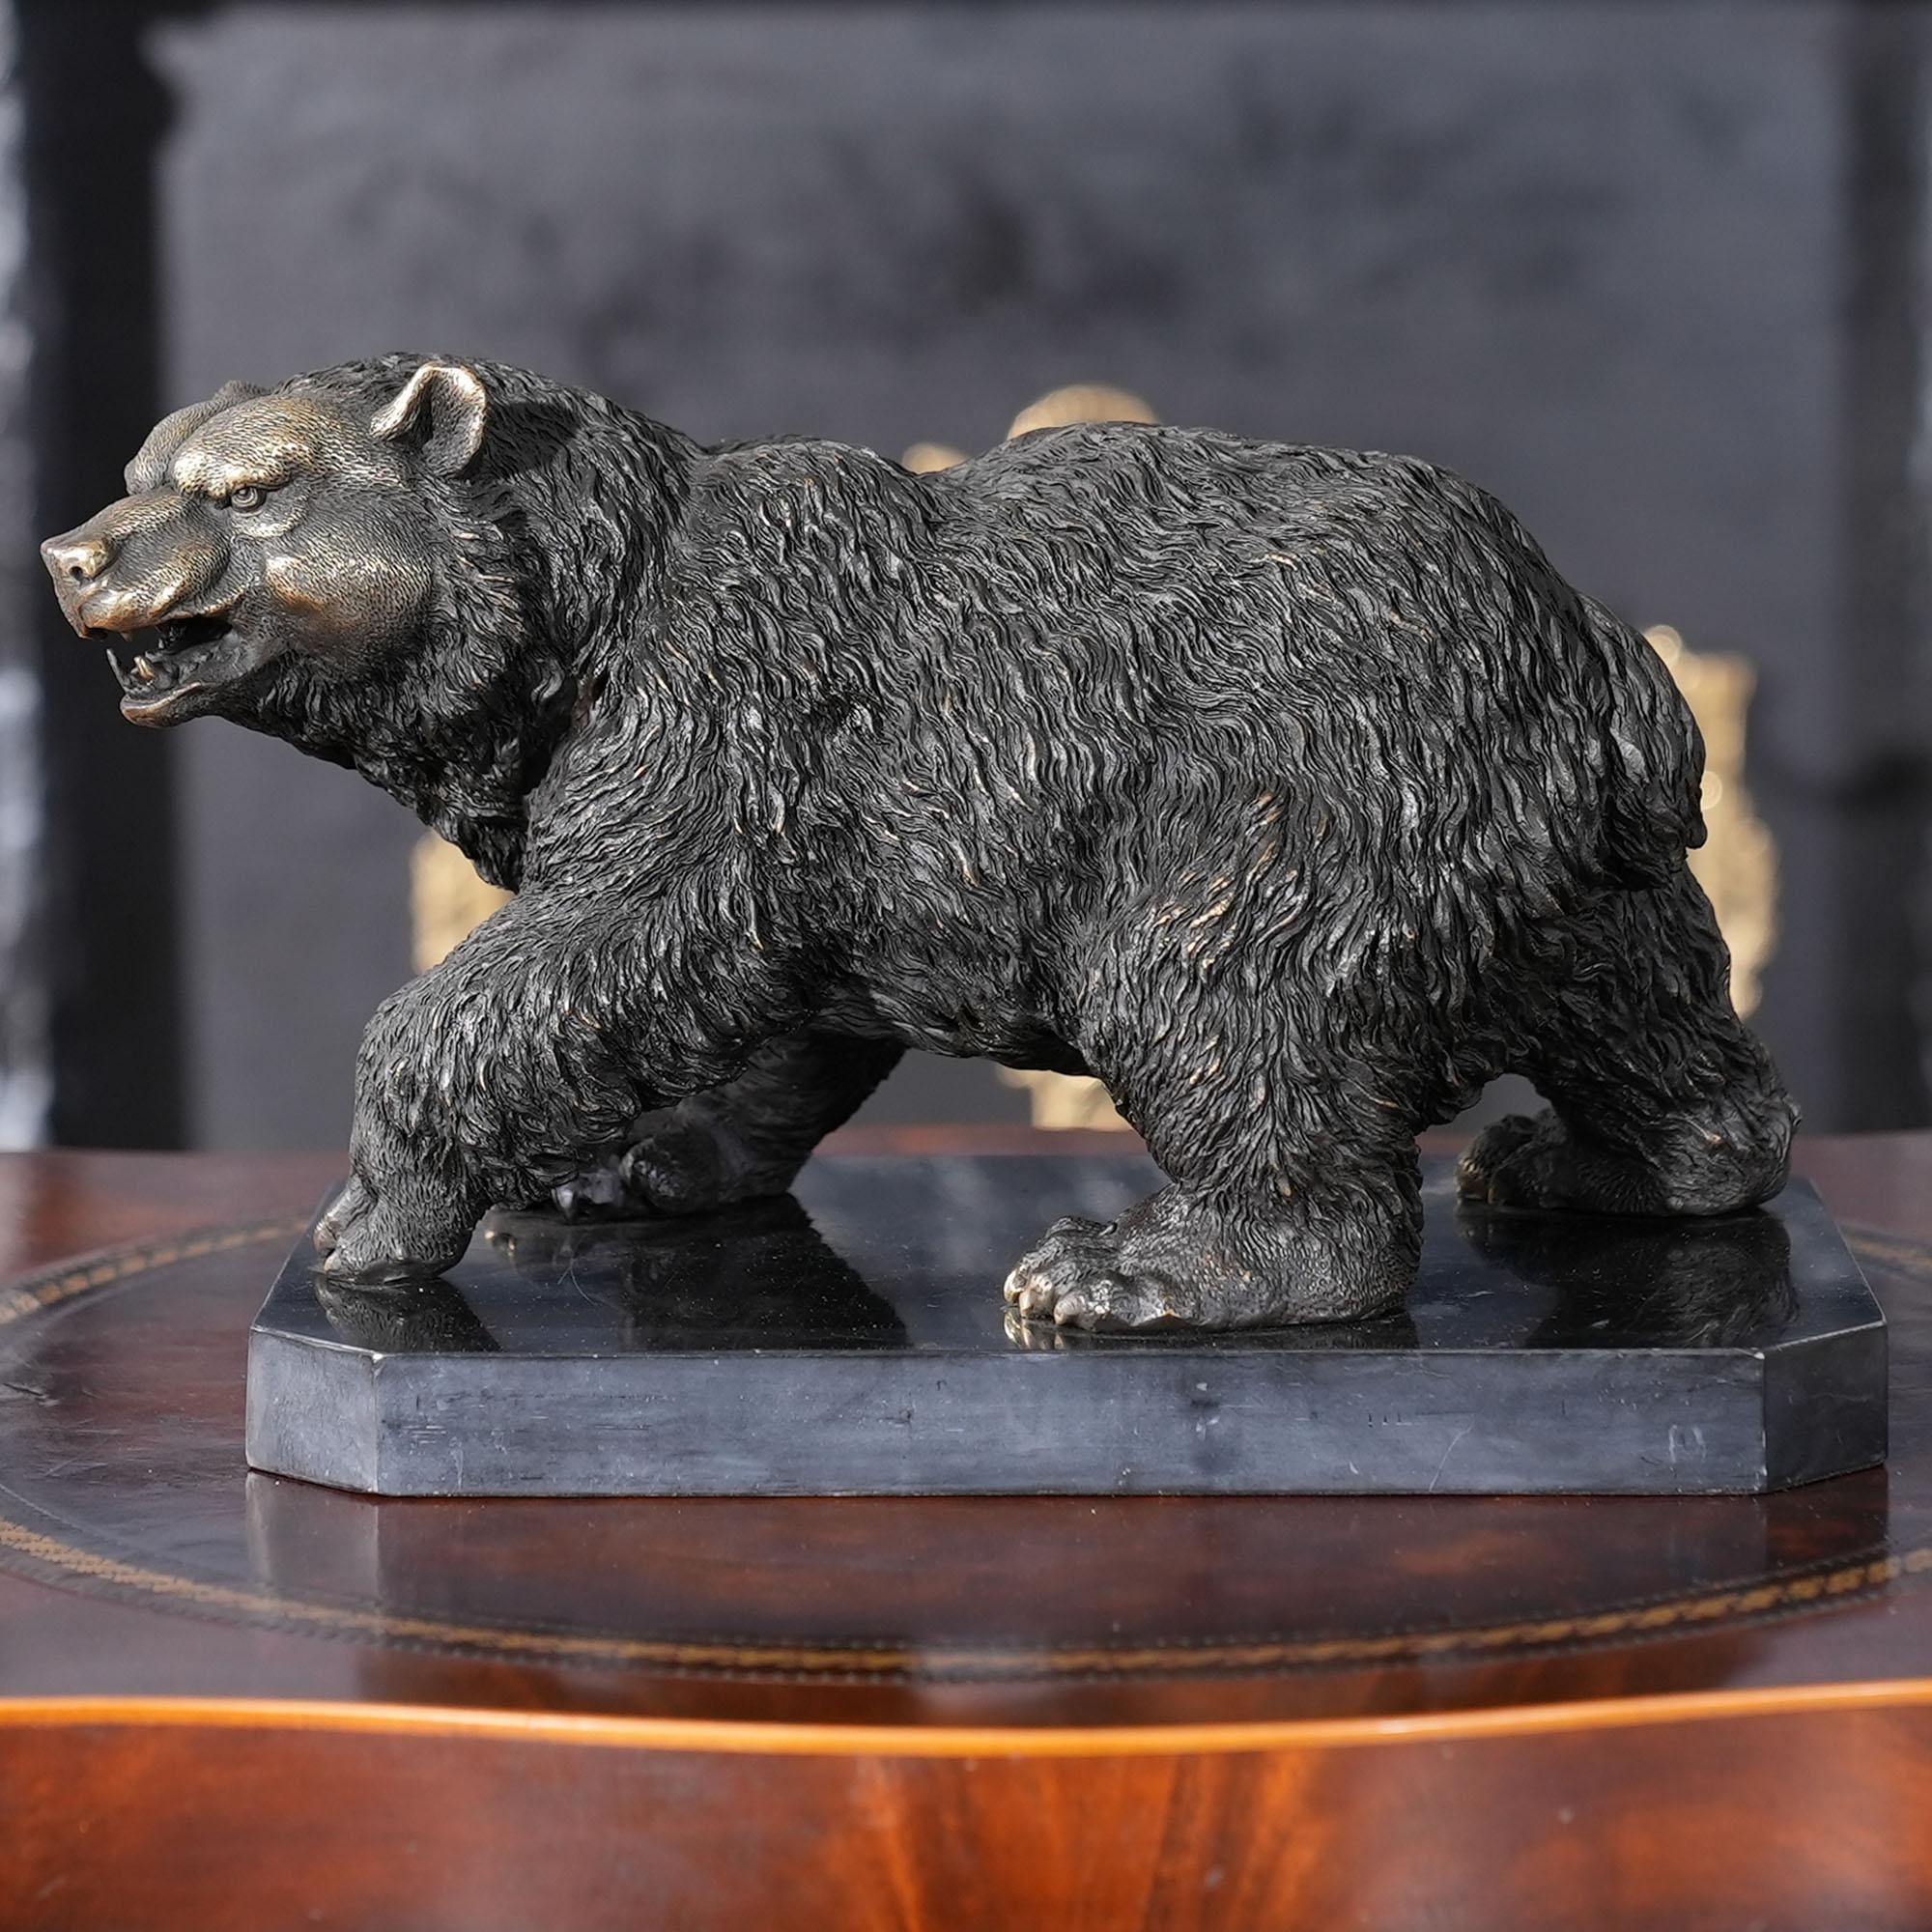 Redoutable même lorsqu'il est immobile, l'ours en bronze sur socle en marbre est un ajout saisissant à tout décor. En utilisant des méthodes traditionnelles de fonte à la cire perdue, l'ours est créé en pièces détachées puis assemblé par brasage et